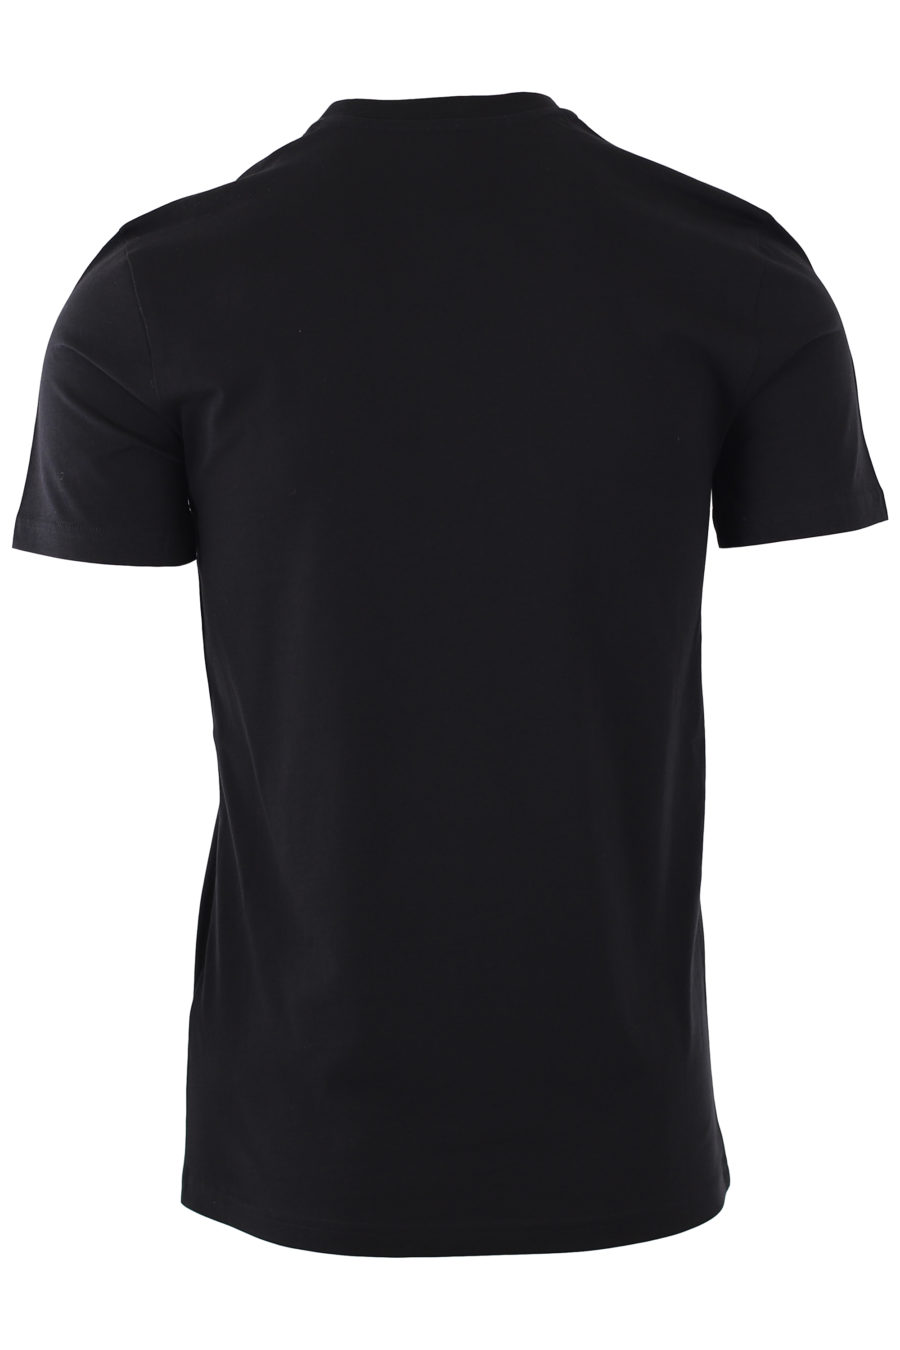 T-shirt noir avec logo "fantasy" blanc - IMG 9288